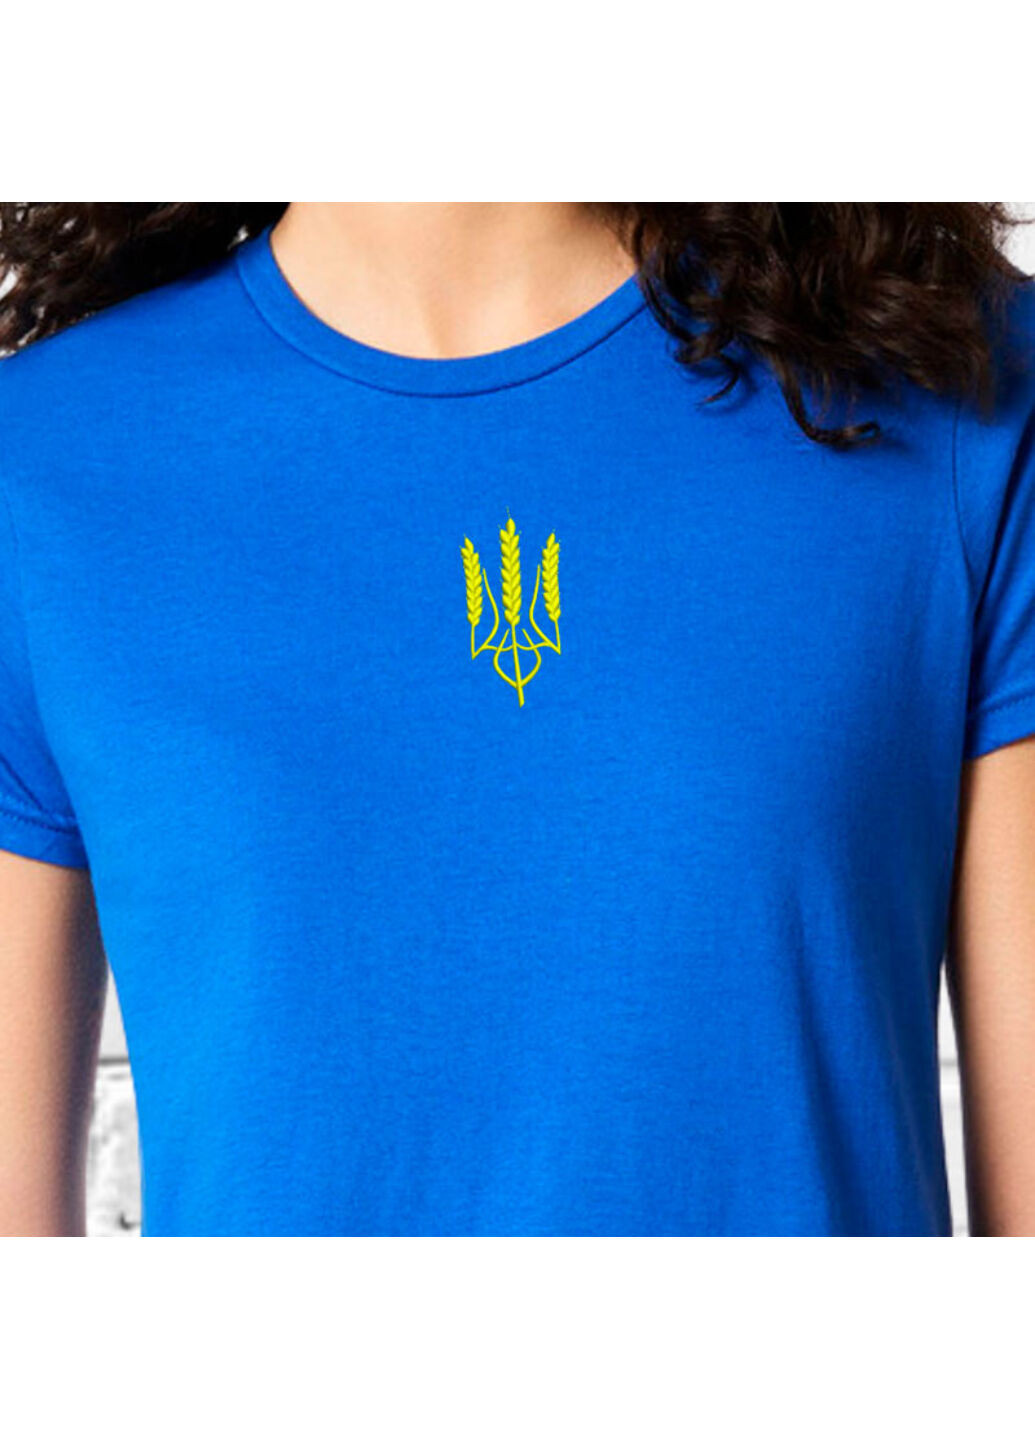 Синя футболка з вишивкою тризуба (колос) 02-2 жіноча синій m No Brand